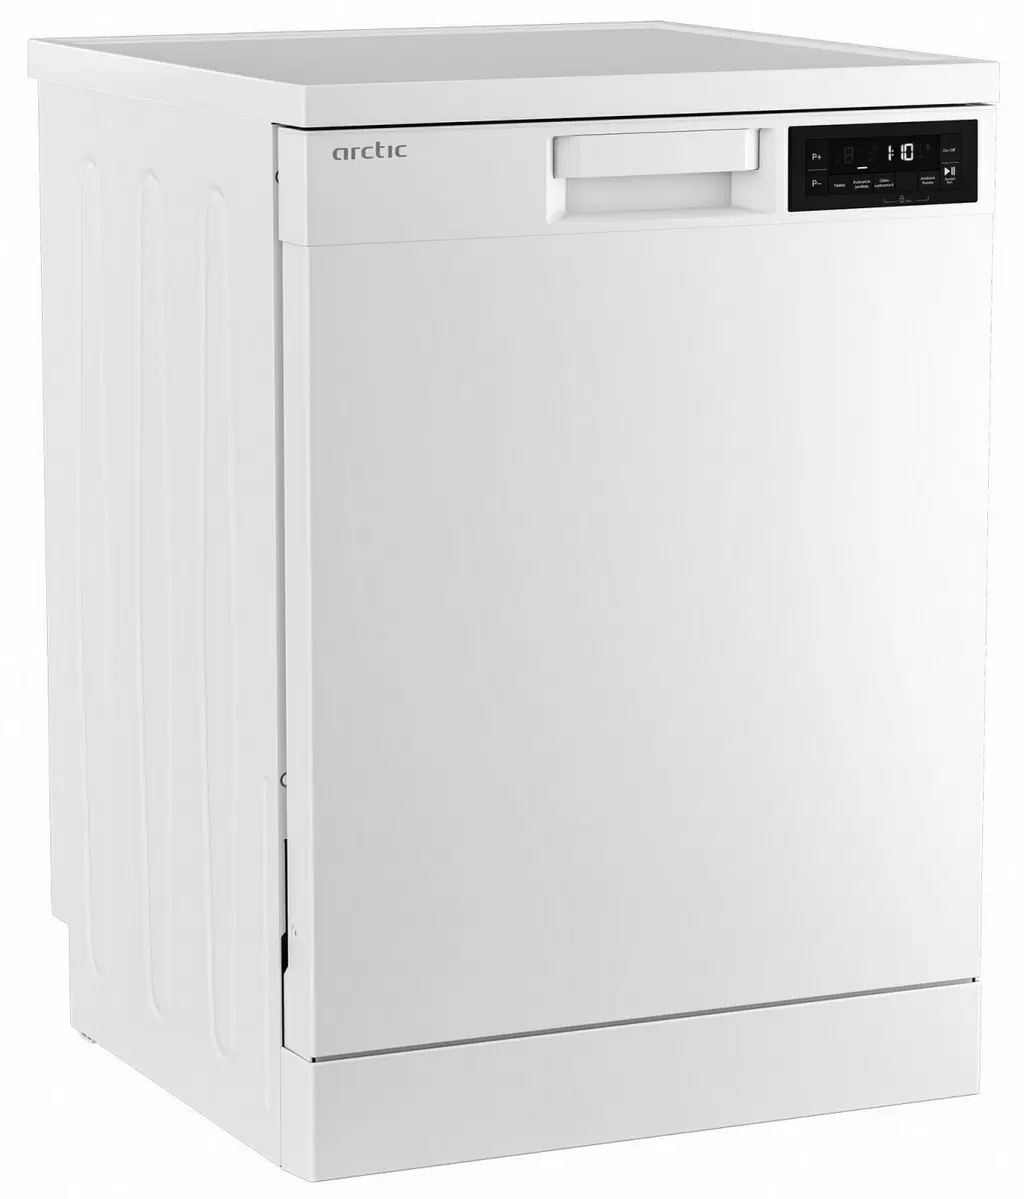 Посудомоечная машина Arctic DFN363, белый